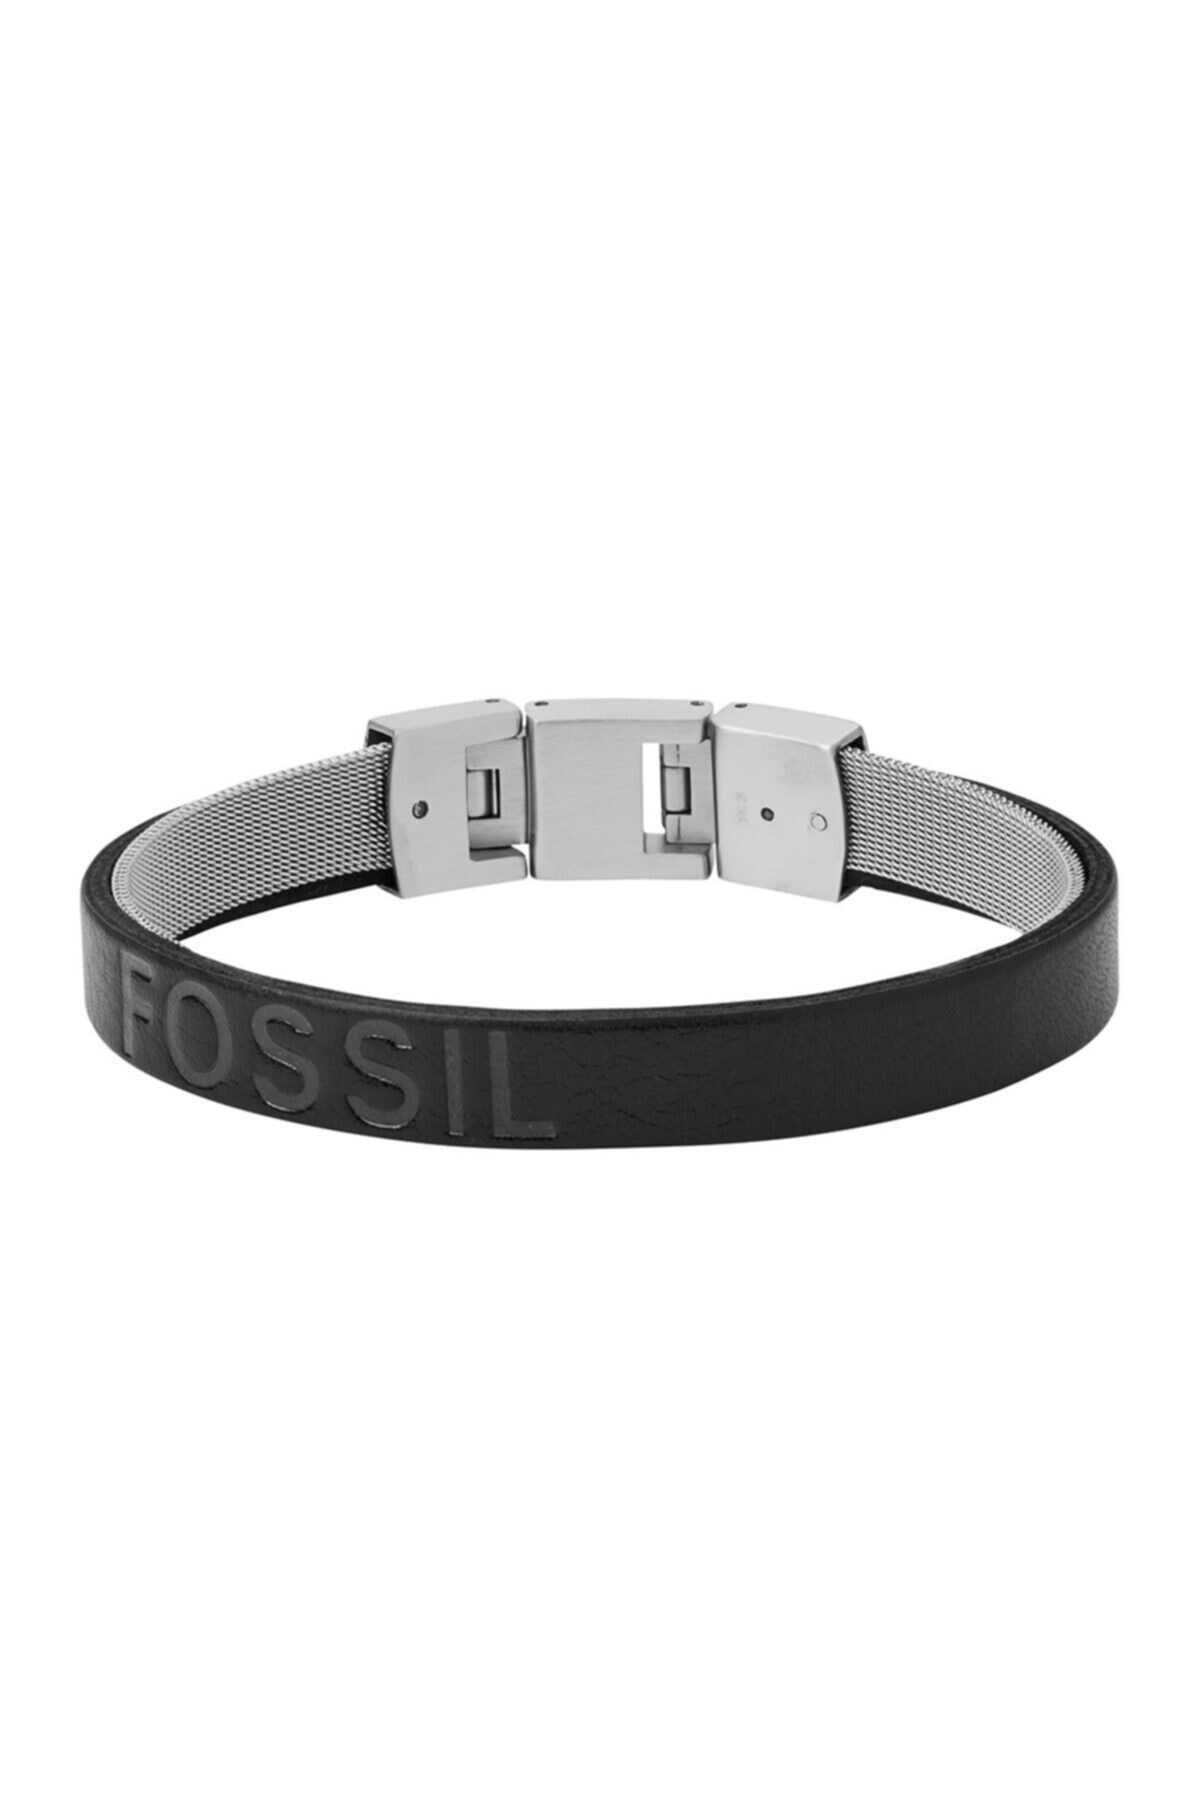 دستبند چرم مردانه Fosil Jf03119-040 مشکی برند Guess 